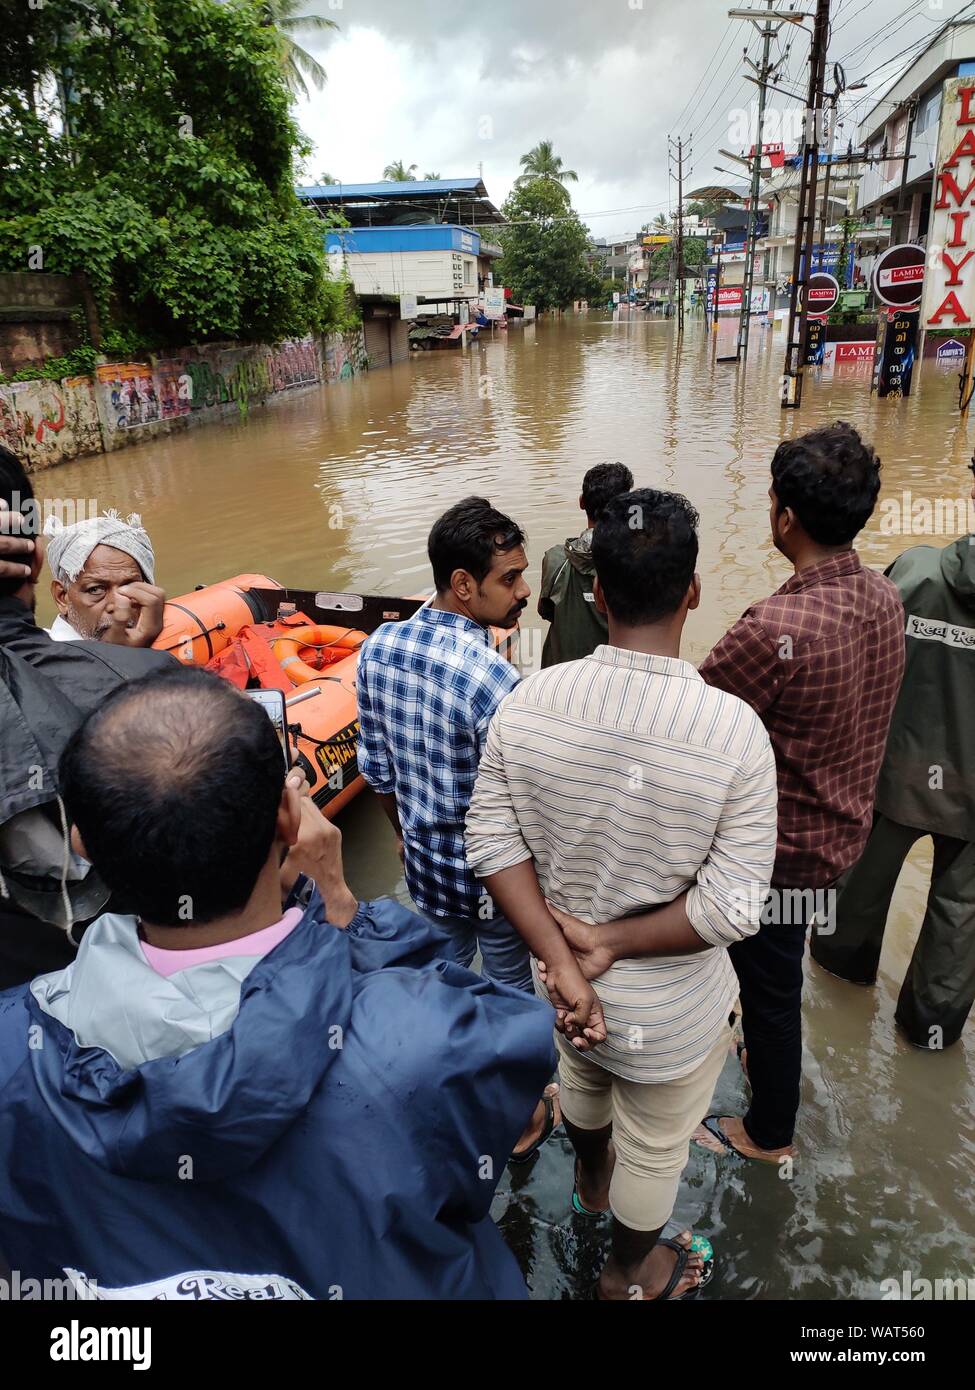 NILAMBUR, Kerala, Inde - août 08, 2019 : Les gens se sont rassemblés près de l'inondation dans la rue, Janathapadi Nilambur. Banque D'Images